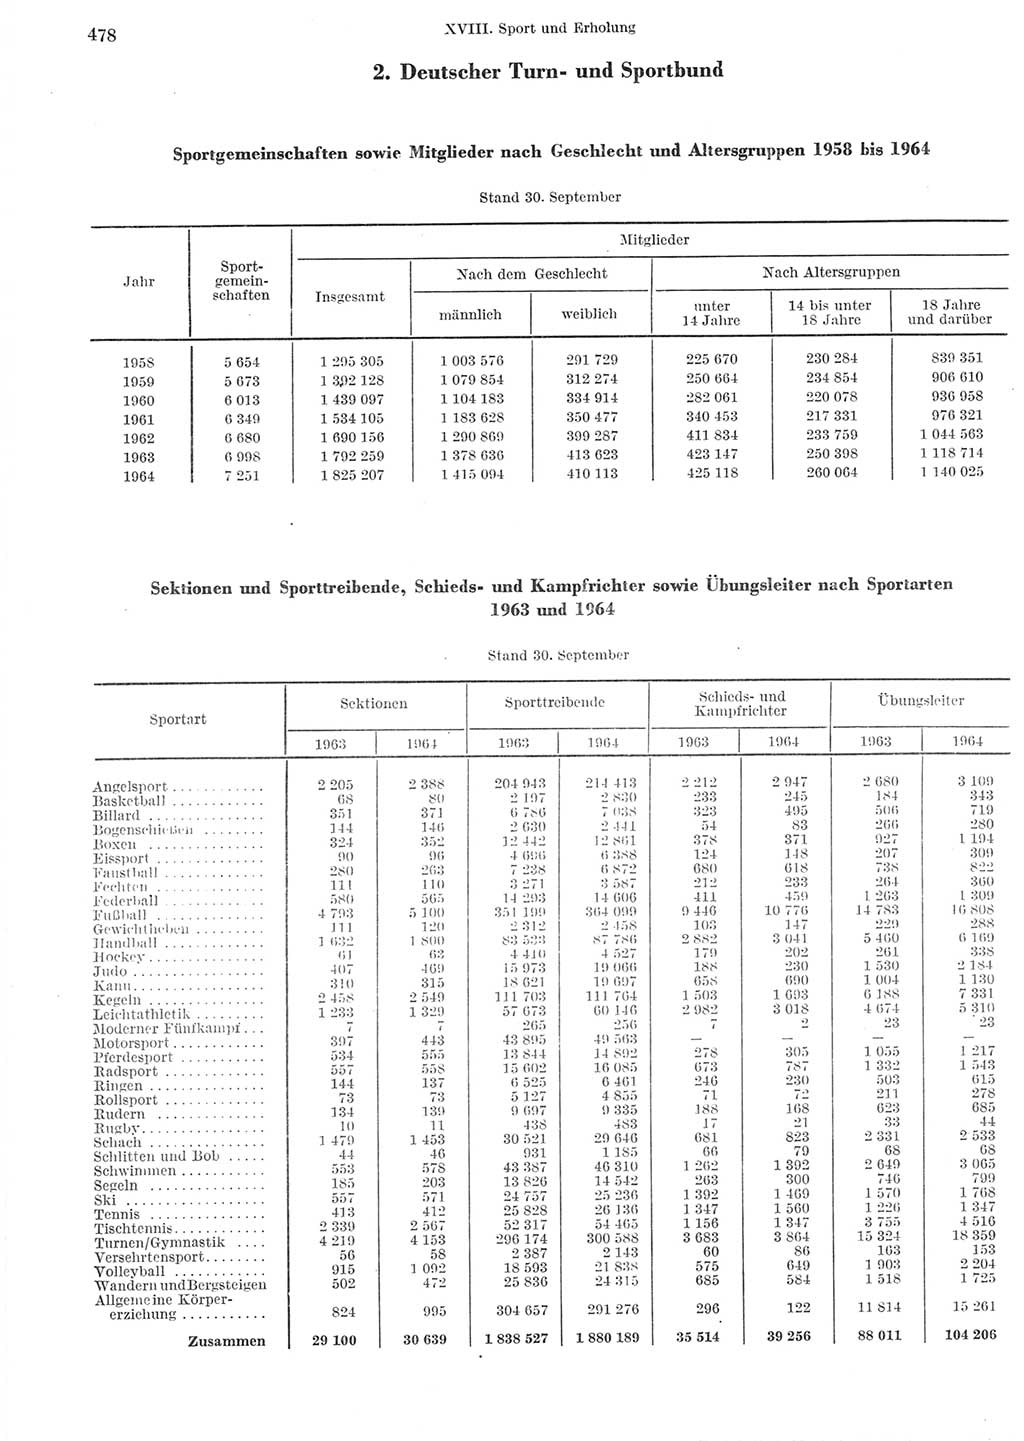 Statistisches Jahrbuch der Deutschen Demokratischen Republik (DDR) 1965, Seite 478 (Stat. Jb. DDR 1965, S. 478)